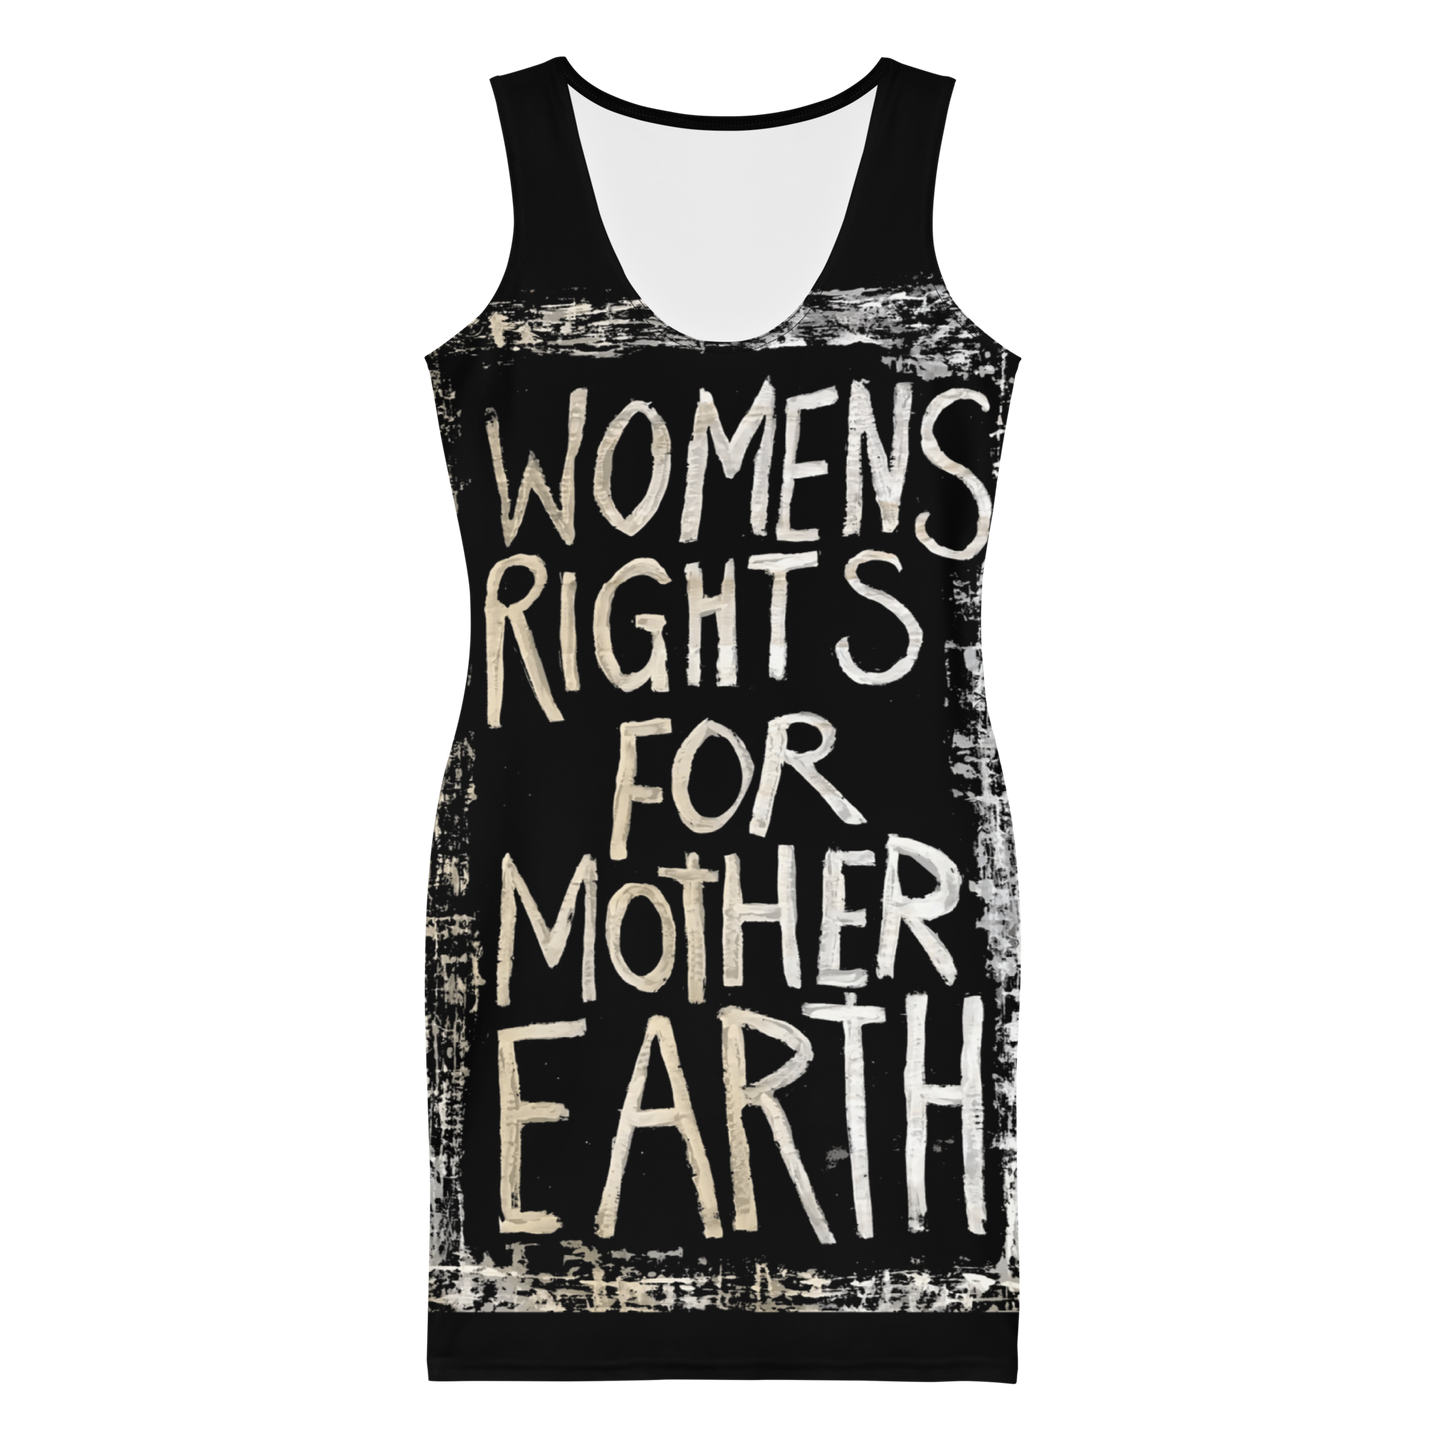 Gitane Demone "Women's Rights for Mother Earth" Dress